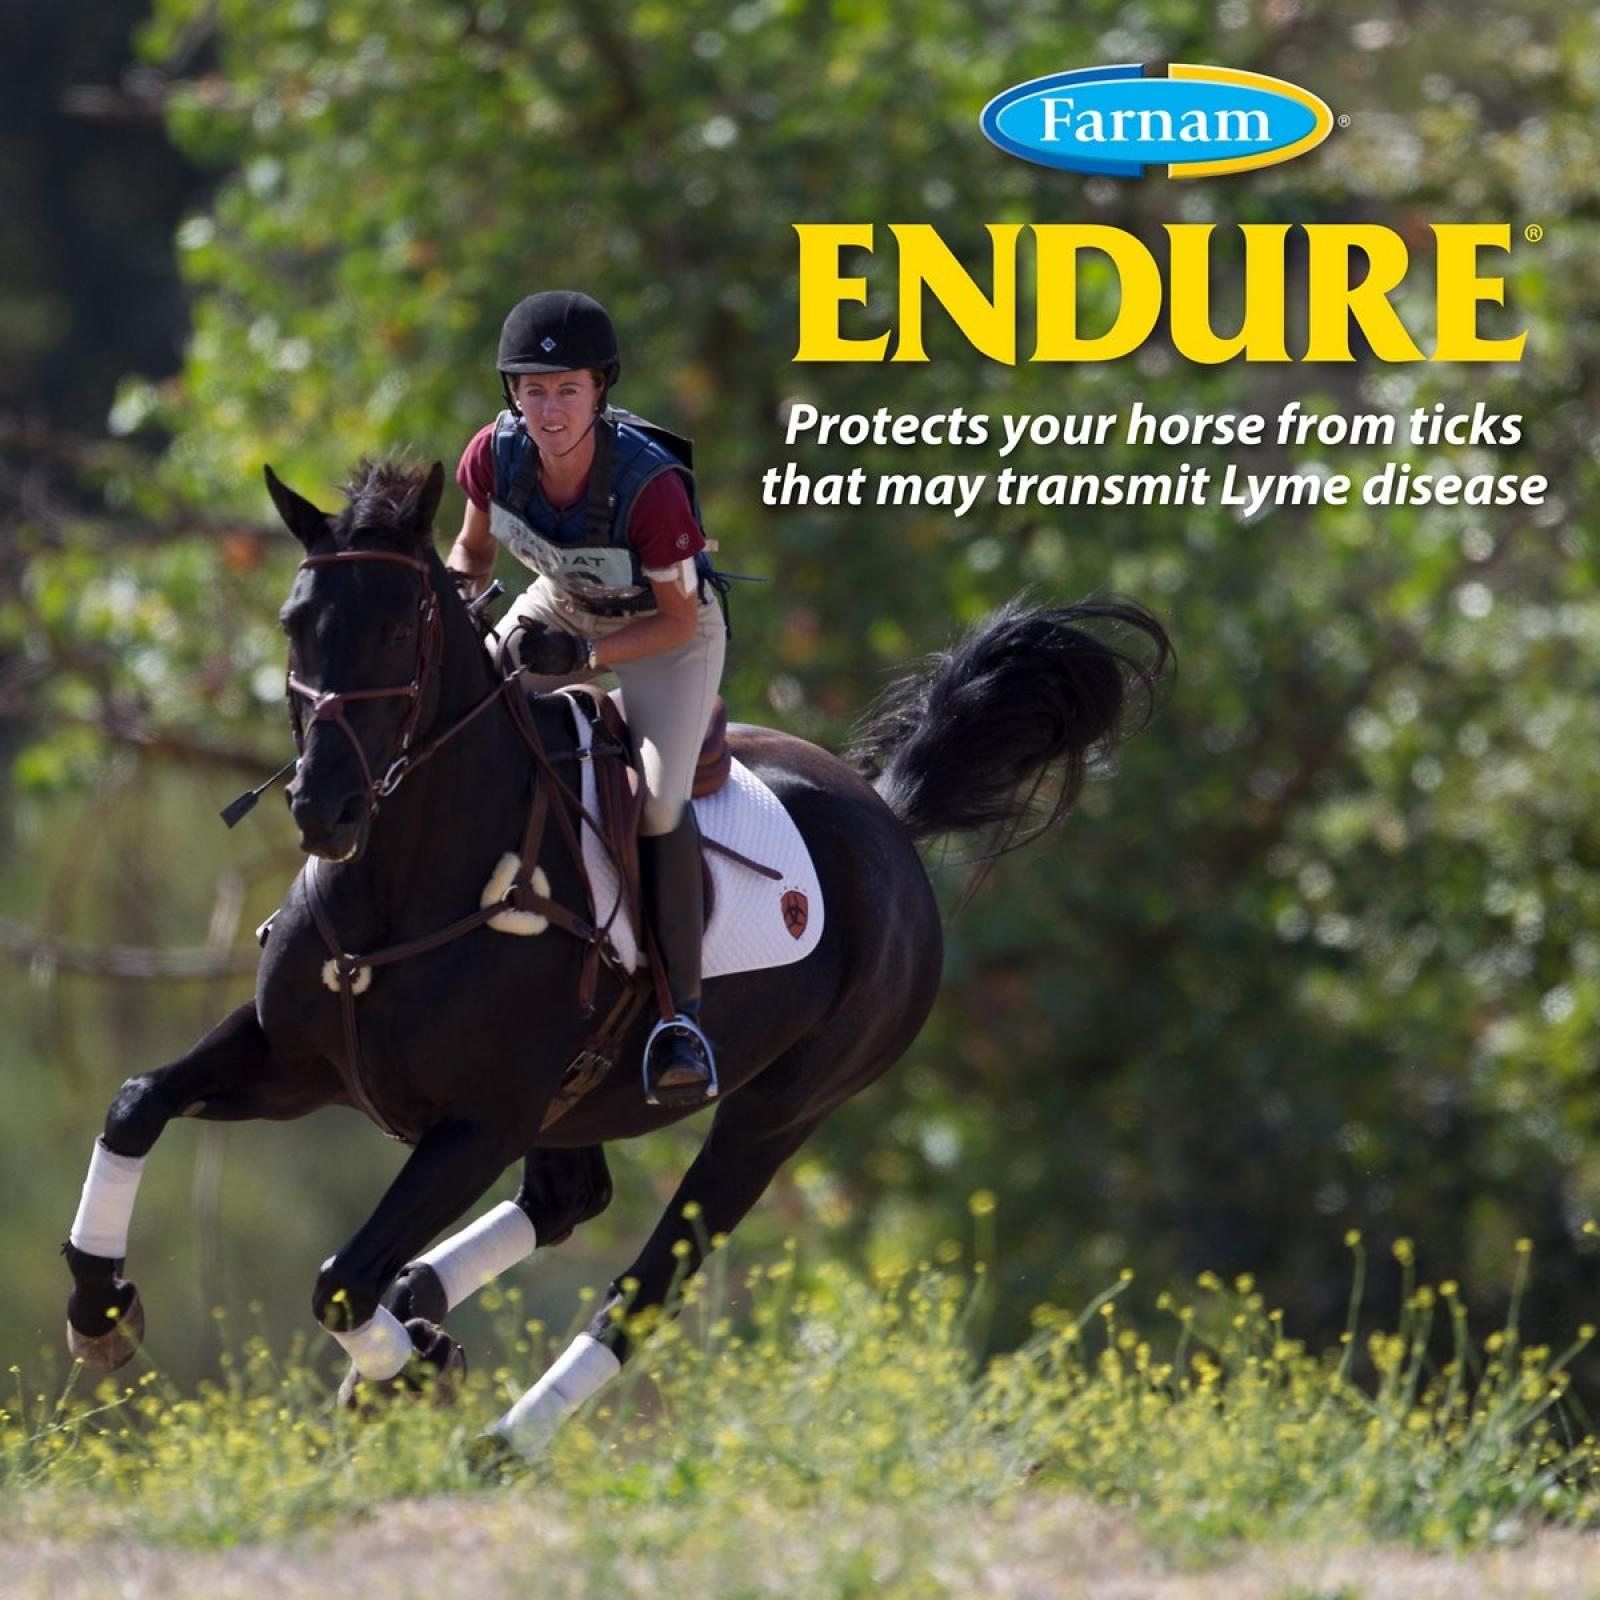 Farnam Endure Roll-On For Horses